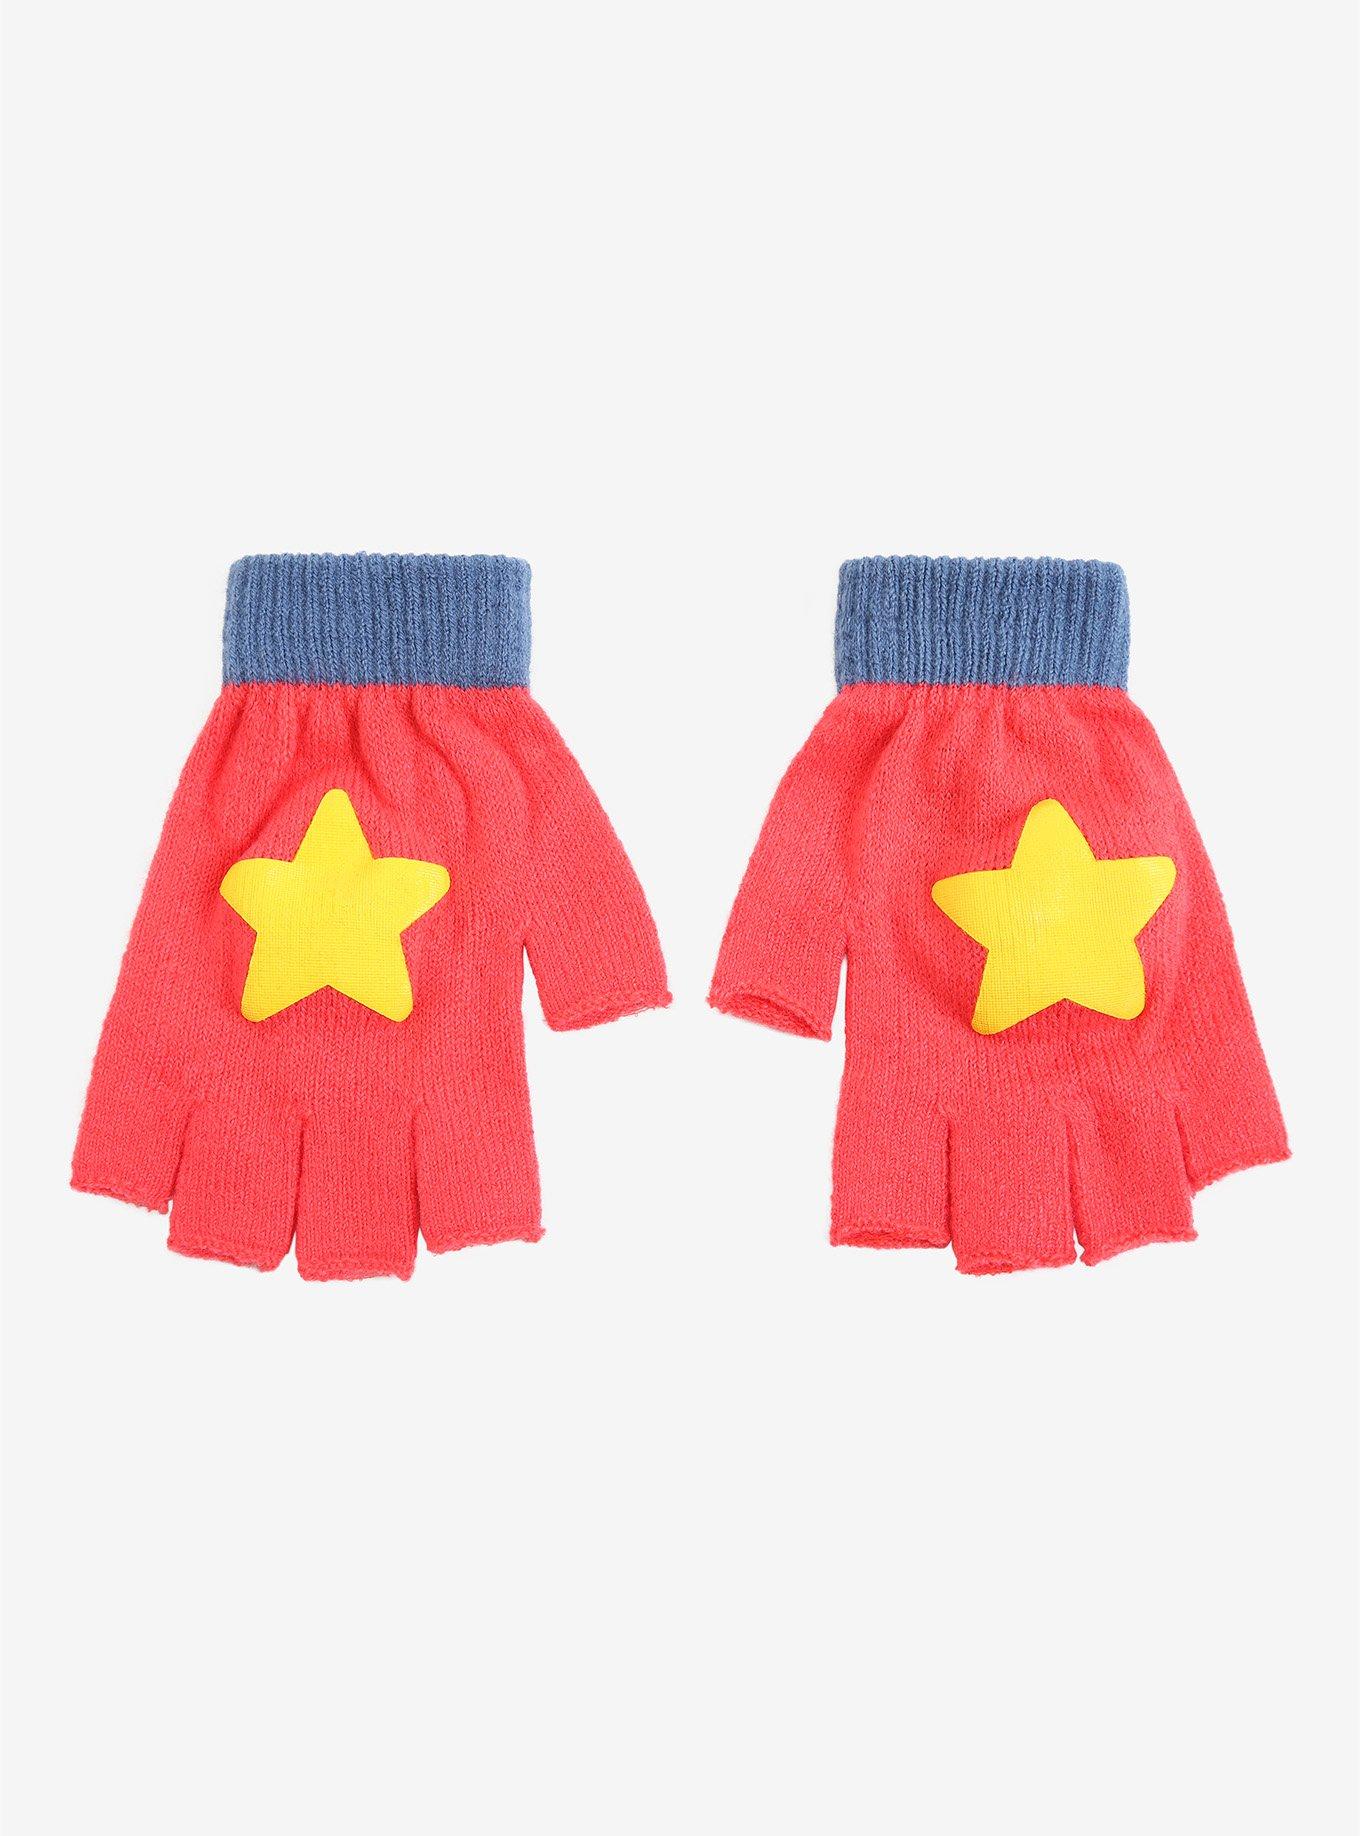 Steven Universe Star Fingerless Gloves, , alternate